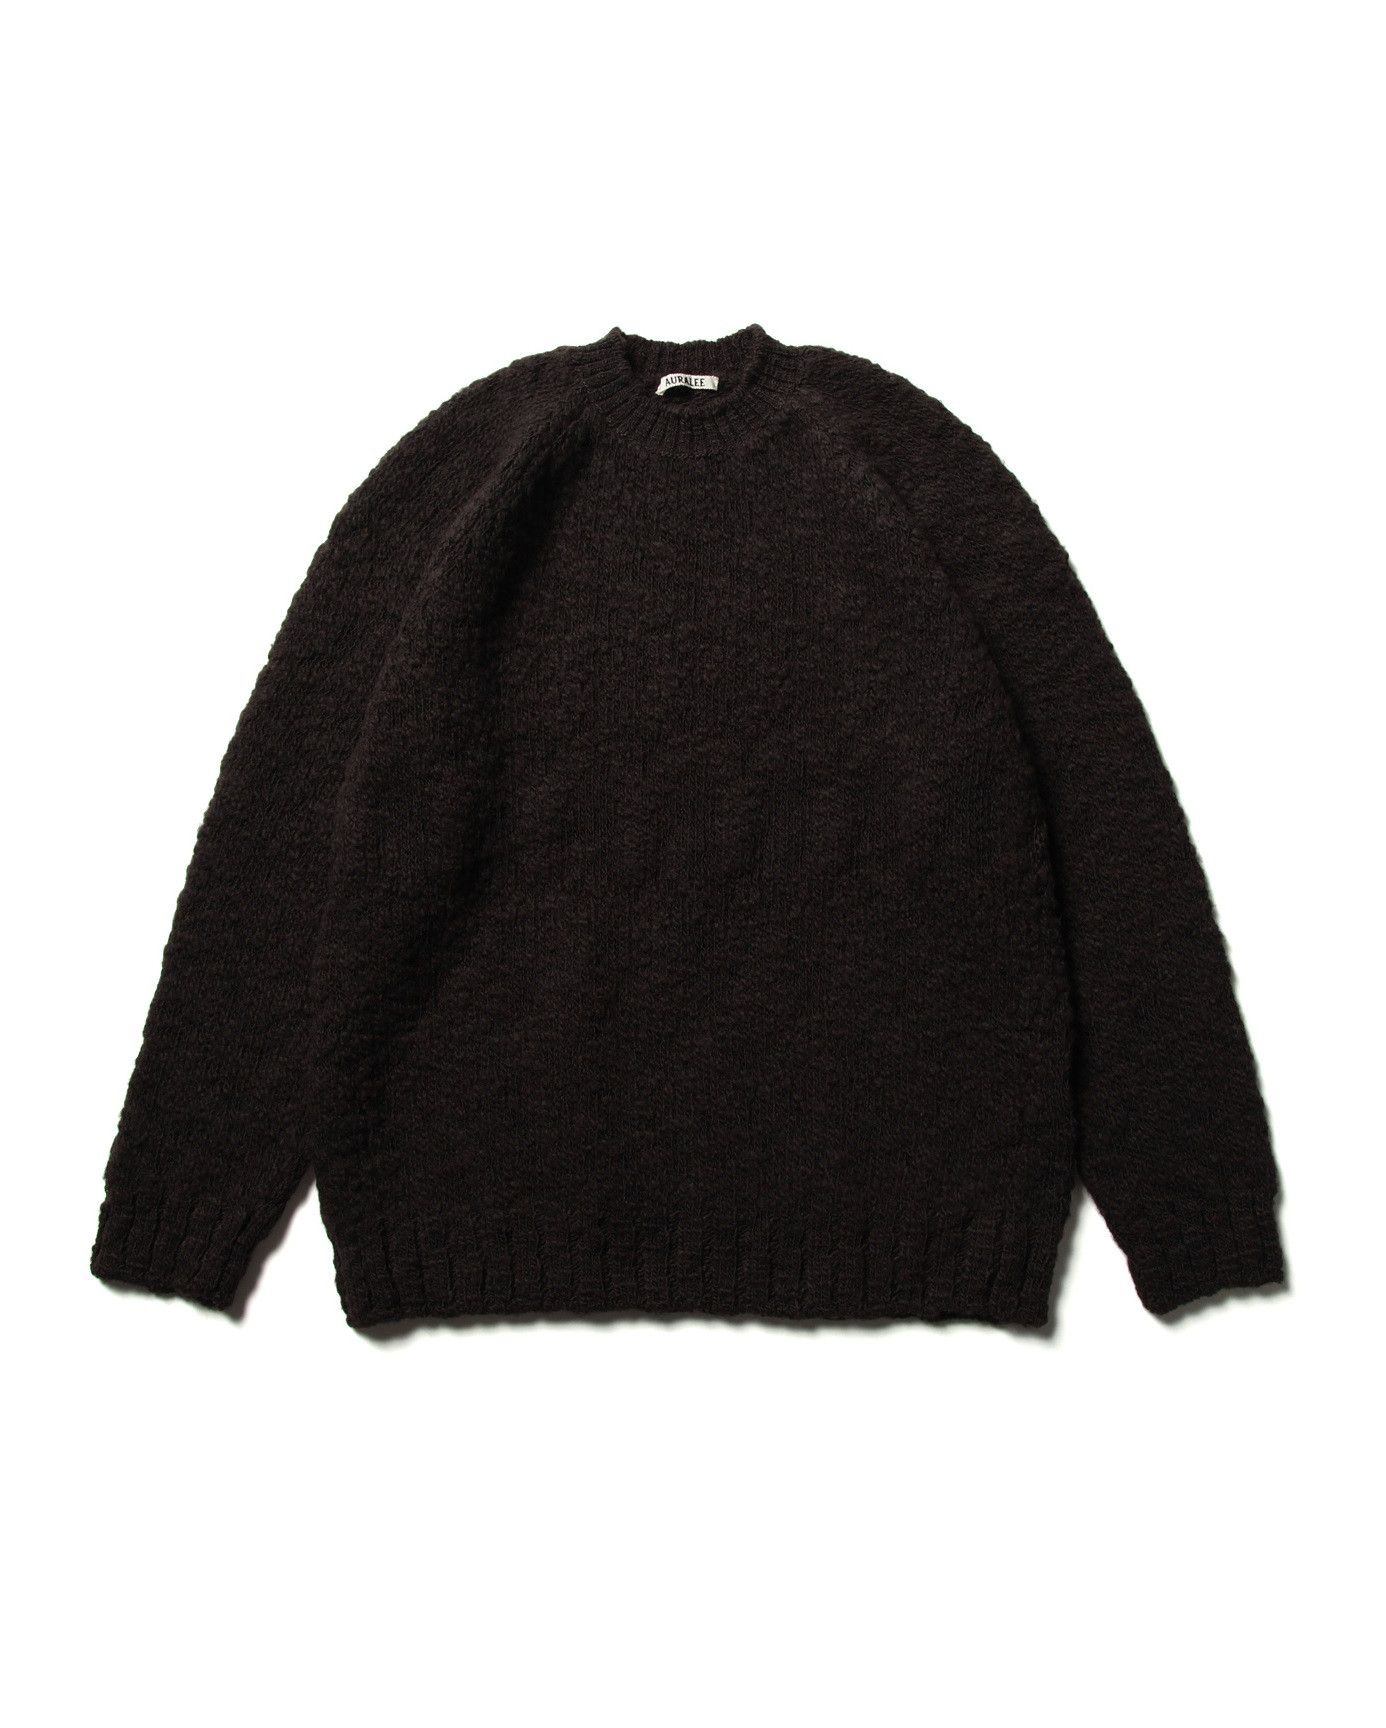 Auralee Auralee Slub Knit Sweater - Brown Wool | Grailed